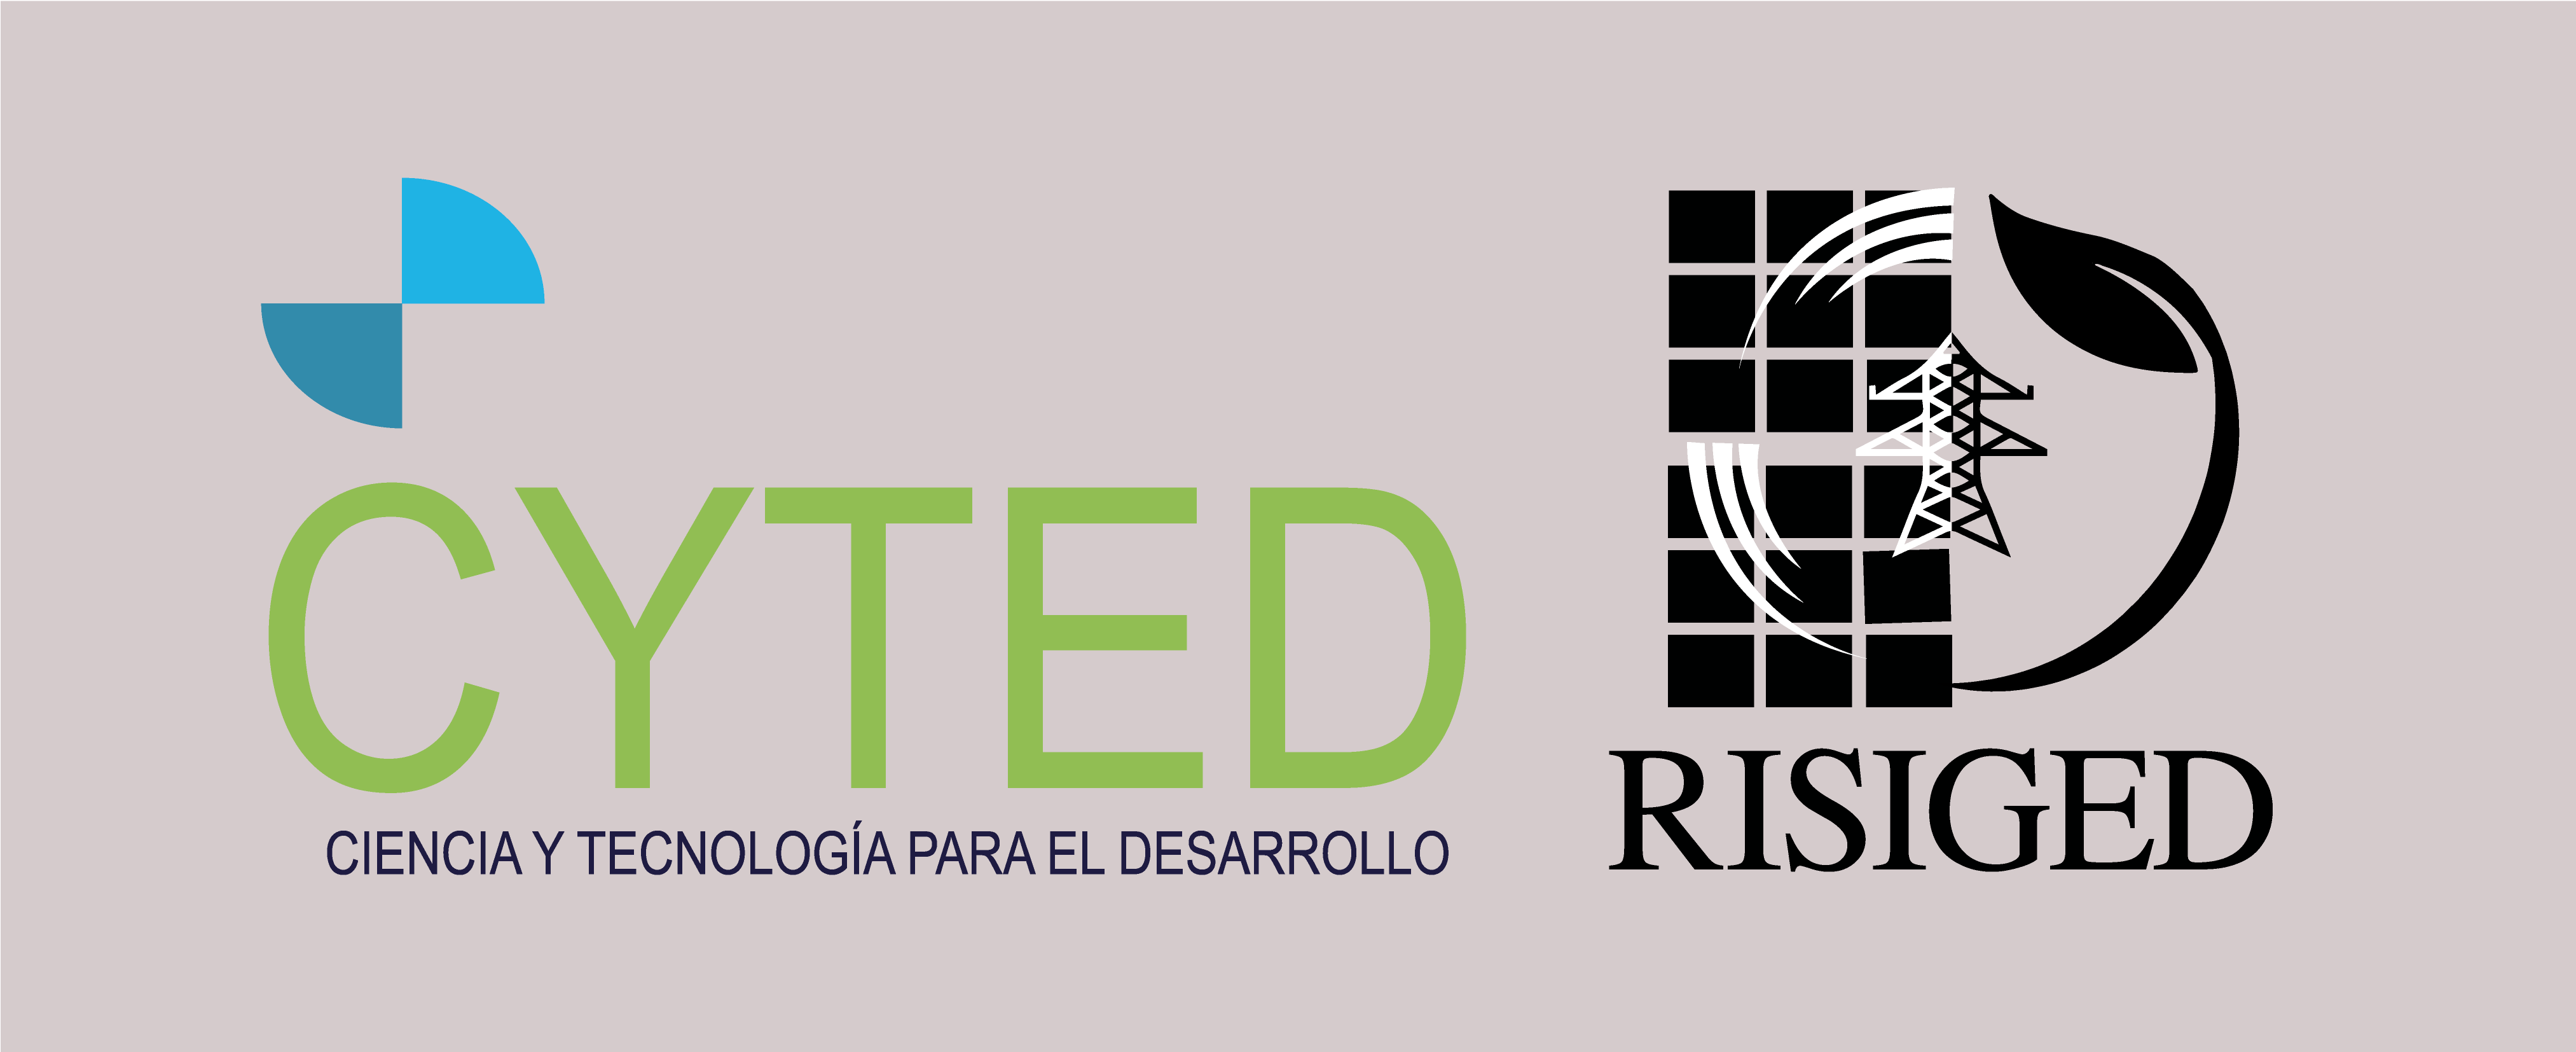 Logo CYTED y RISIGED